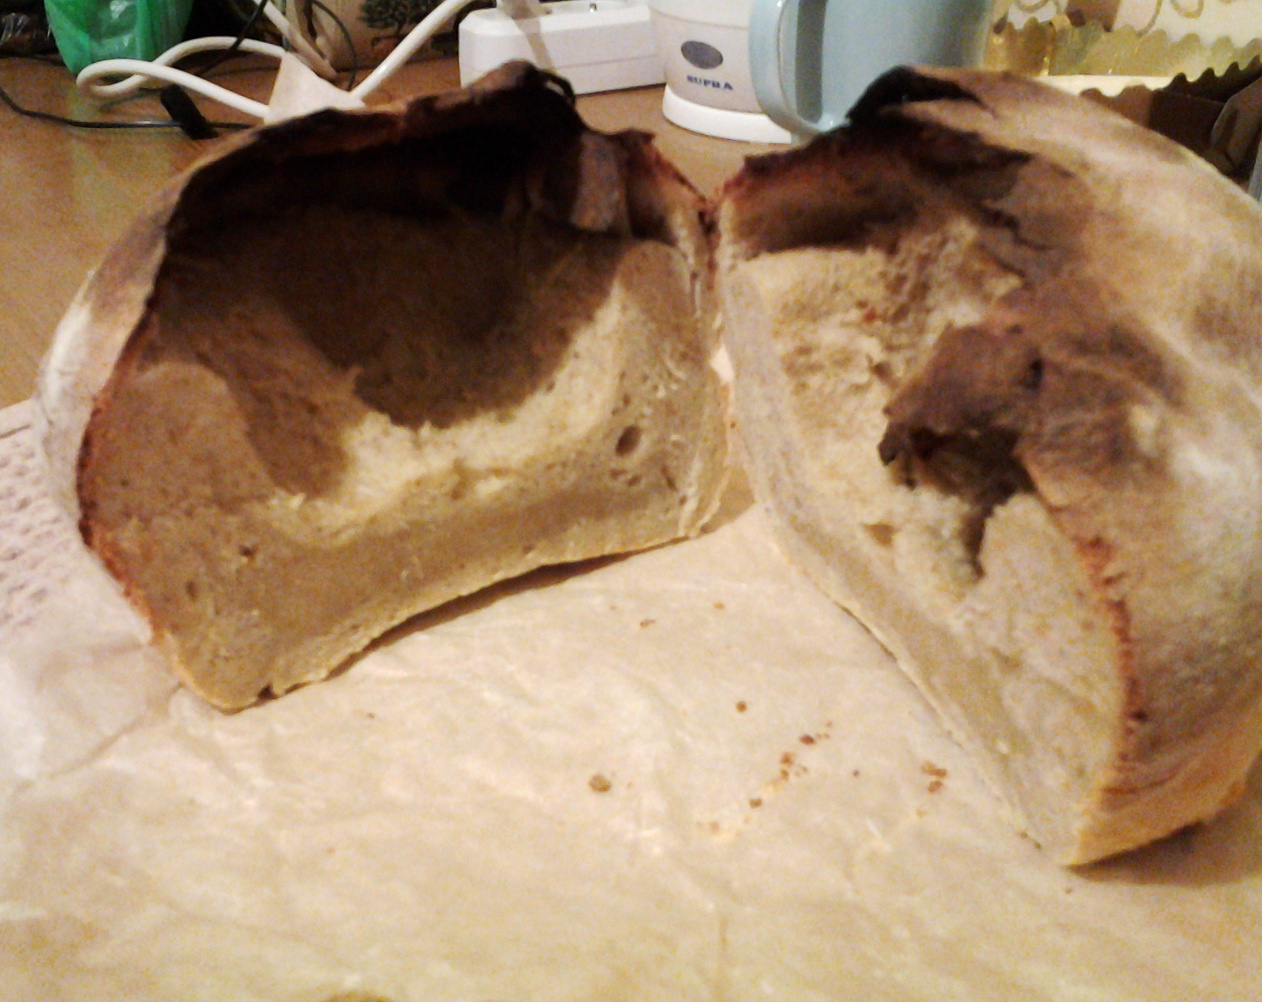 Почему опадает хлеб в хлебопечке?